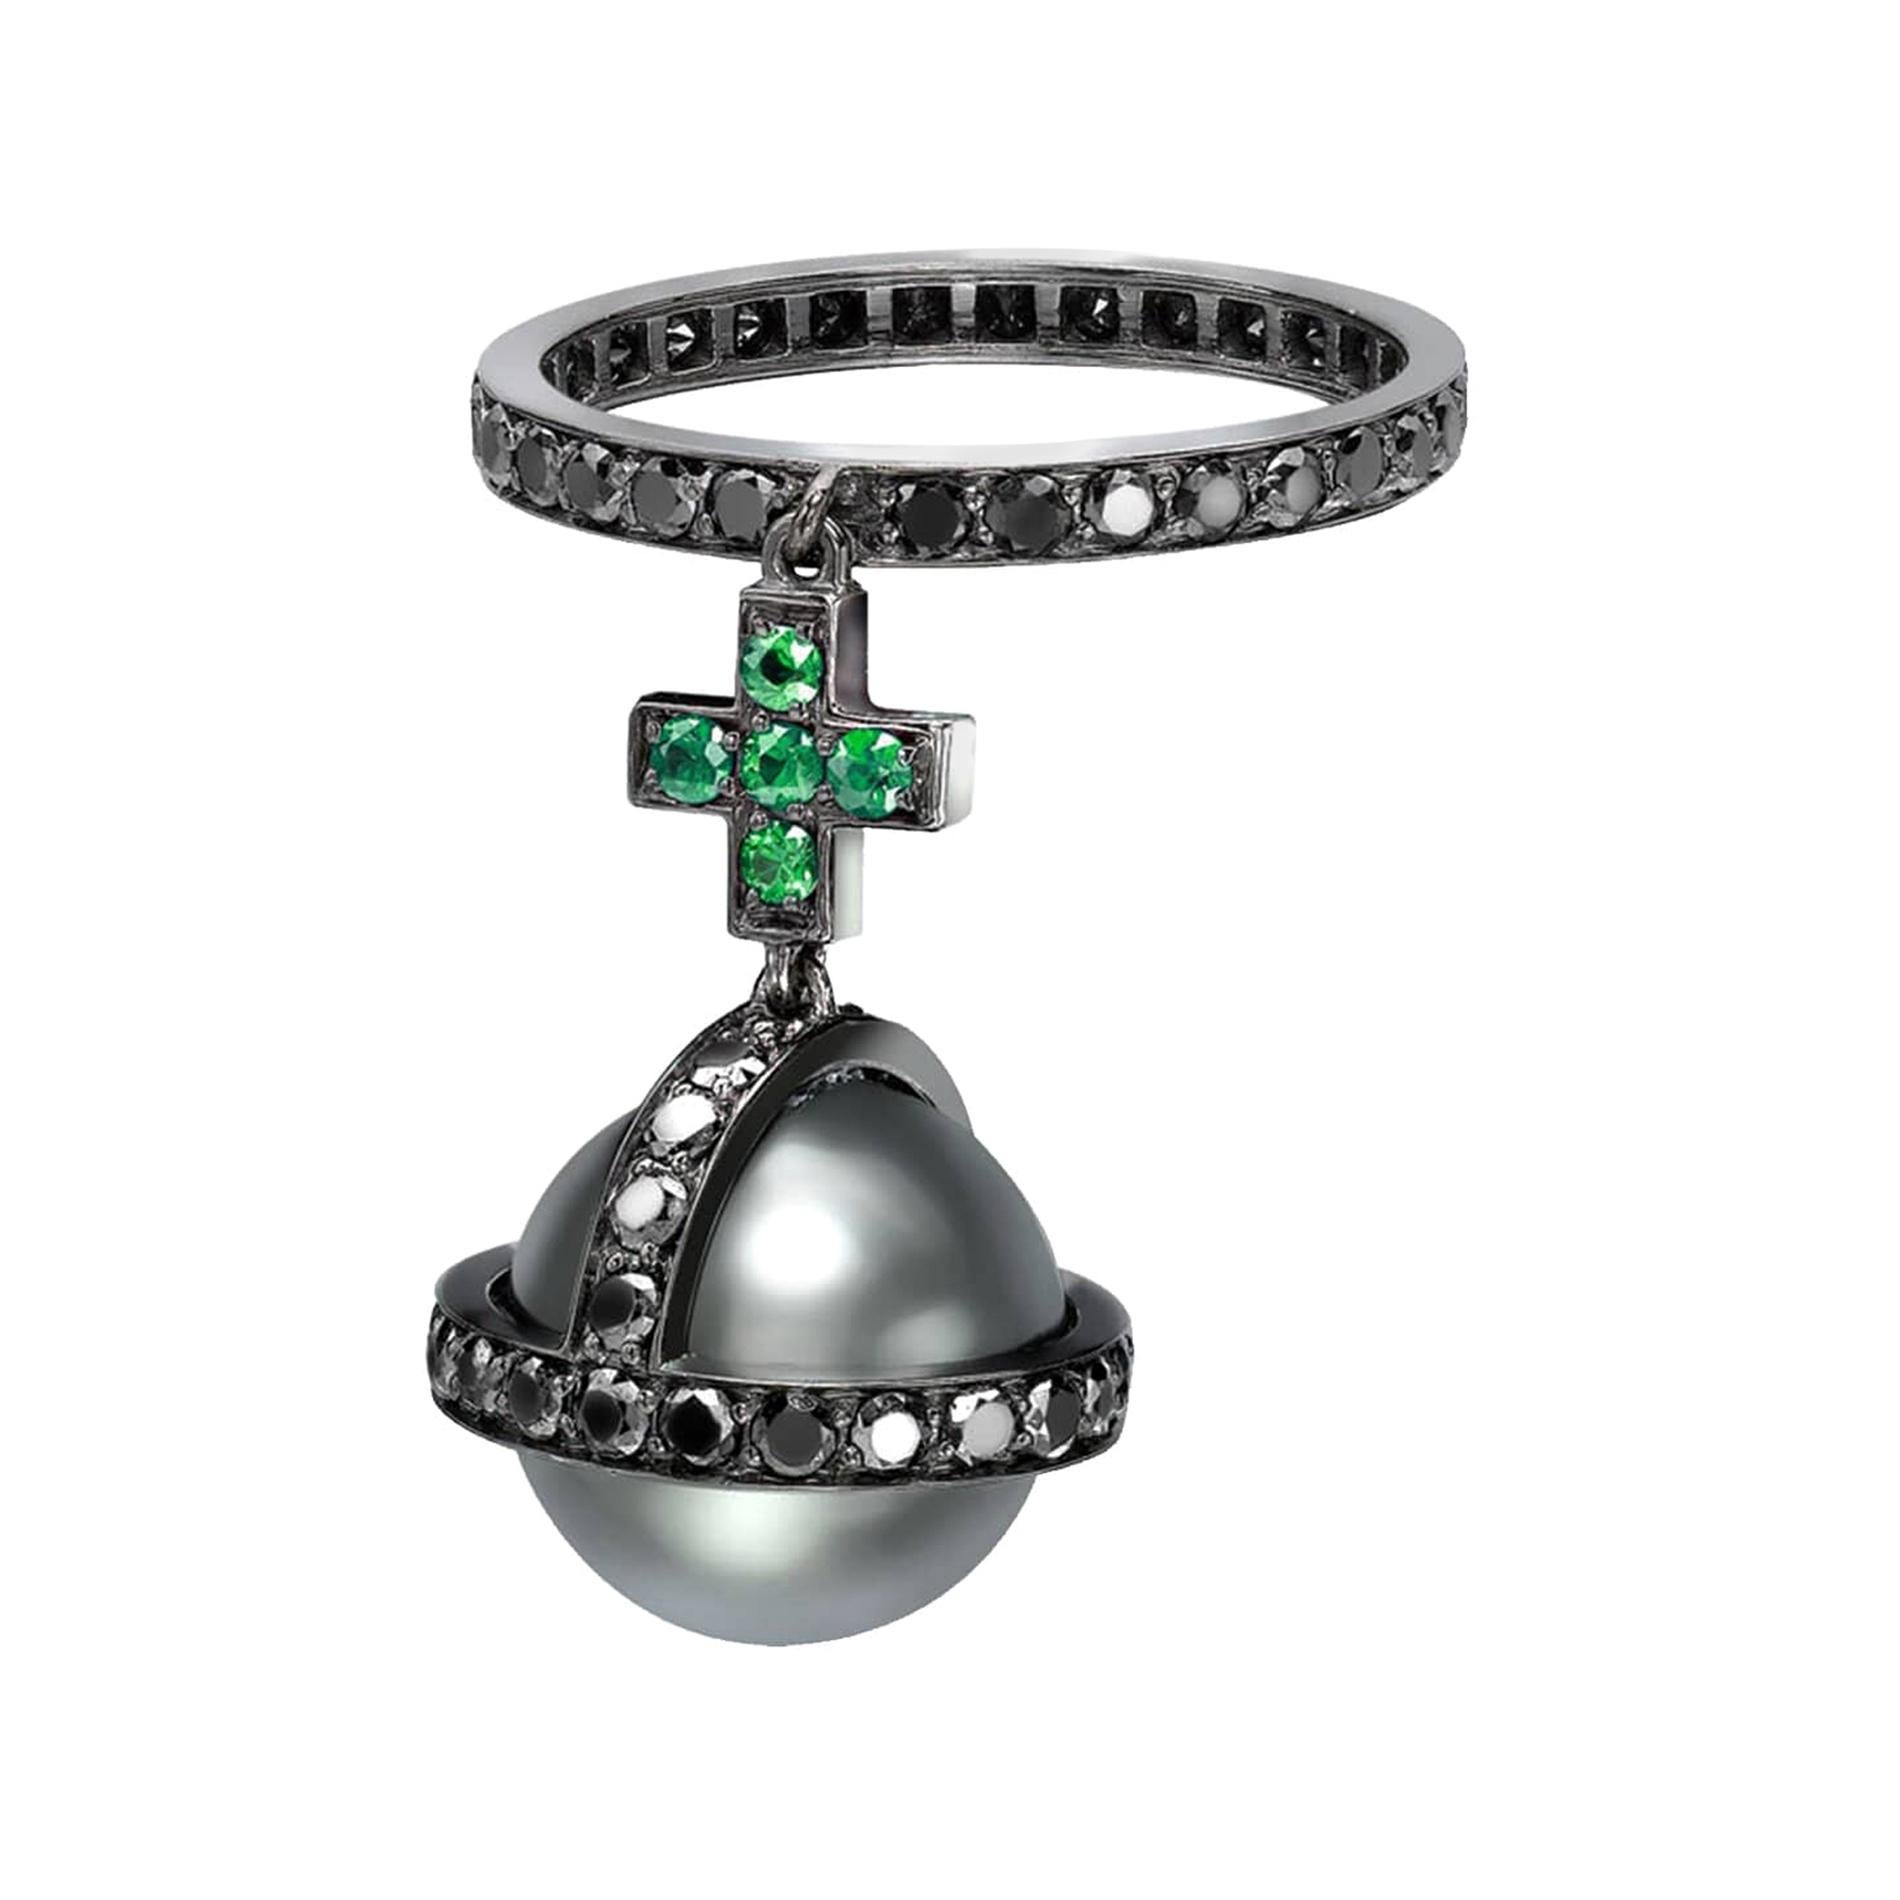 Sybarit- Zepter-Ring aus geschwärztem Gold mit schwarzen Diamanten, Smaragden und Perlen